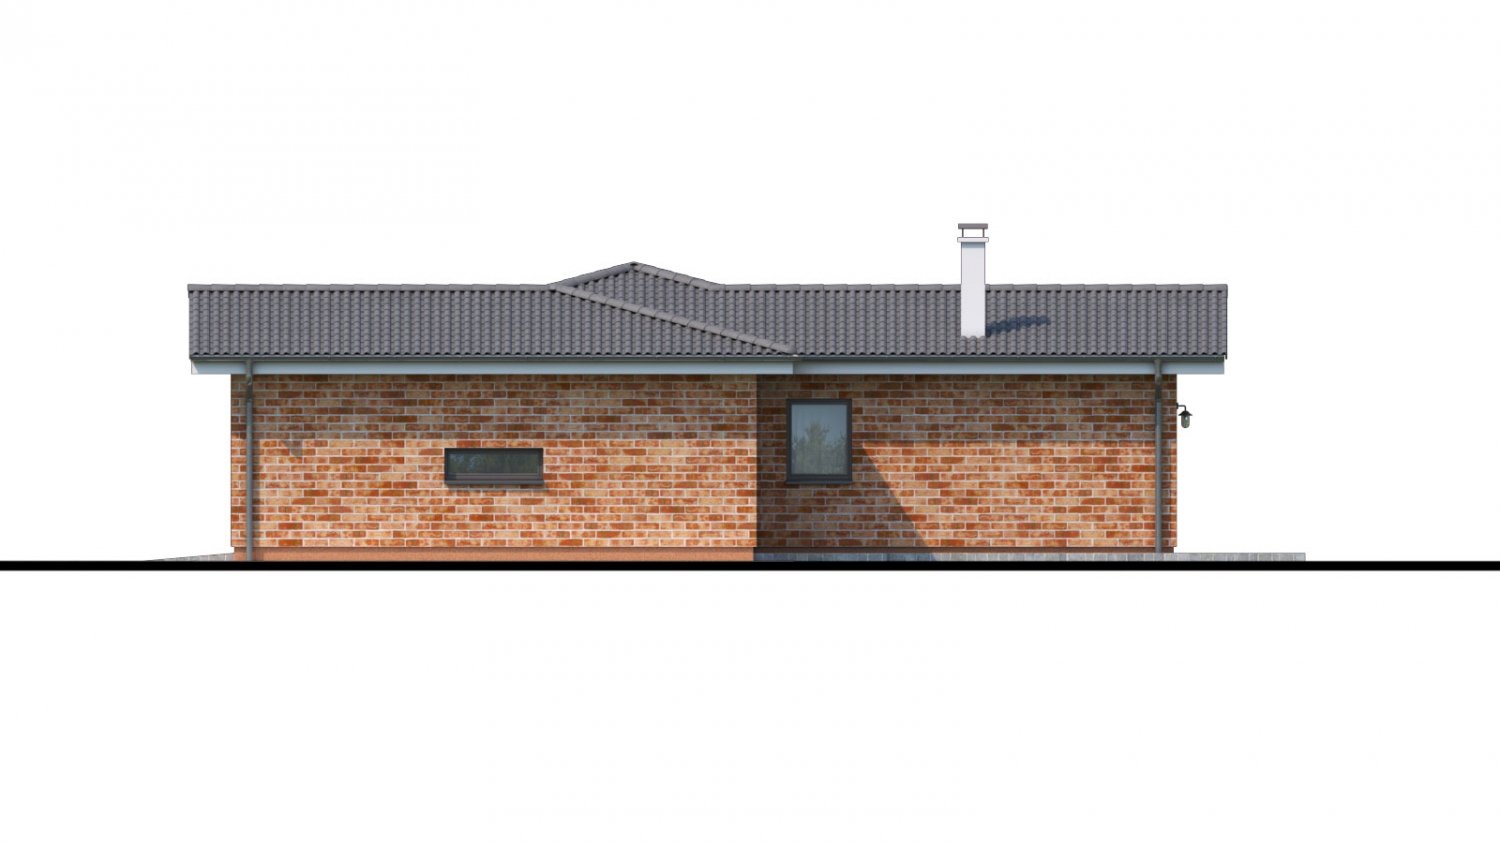 Pohľad 2. - Projekt domu ve tvaru L s garáží.